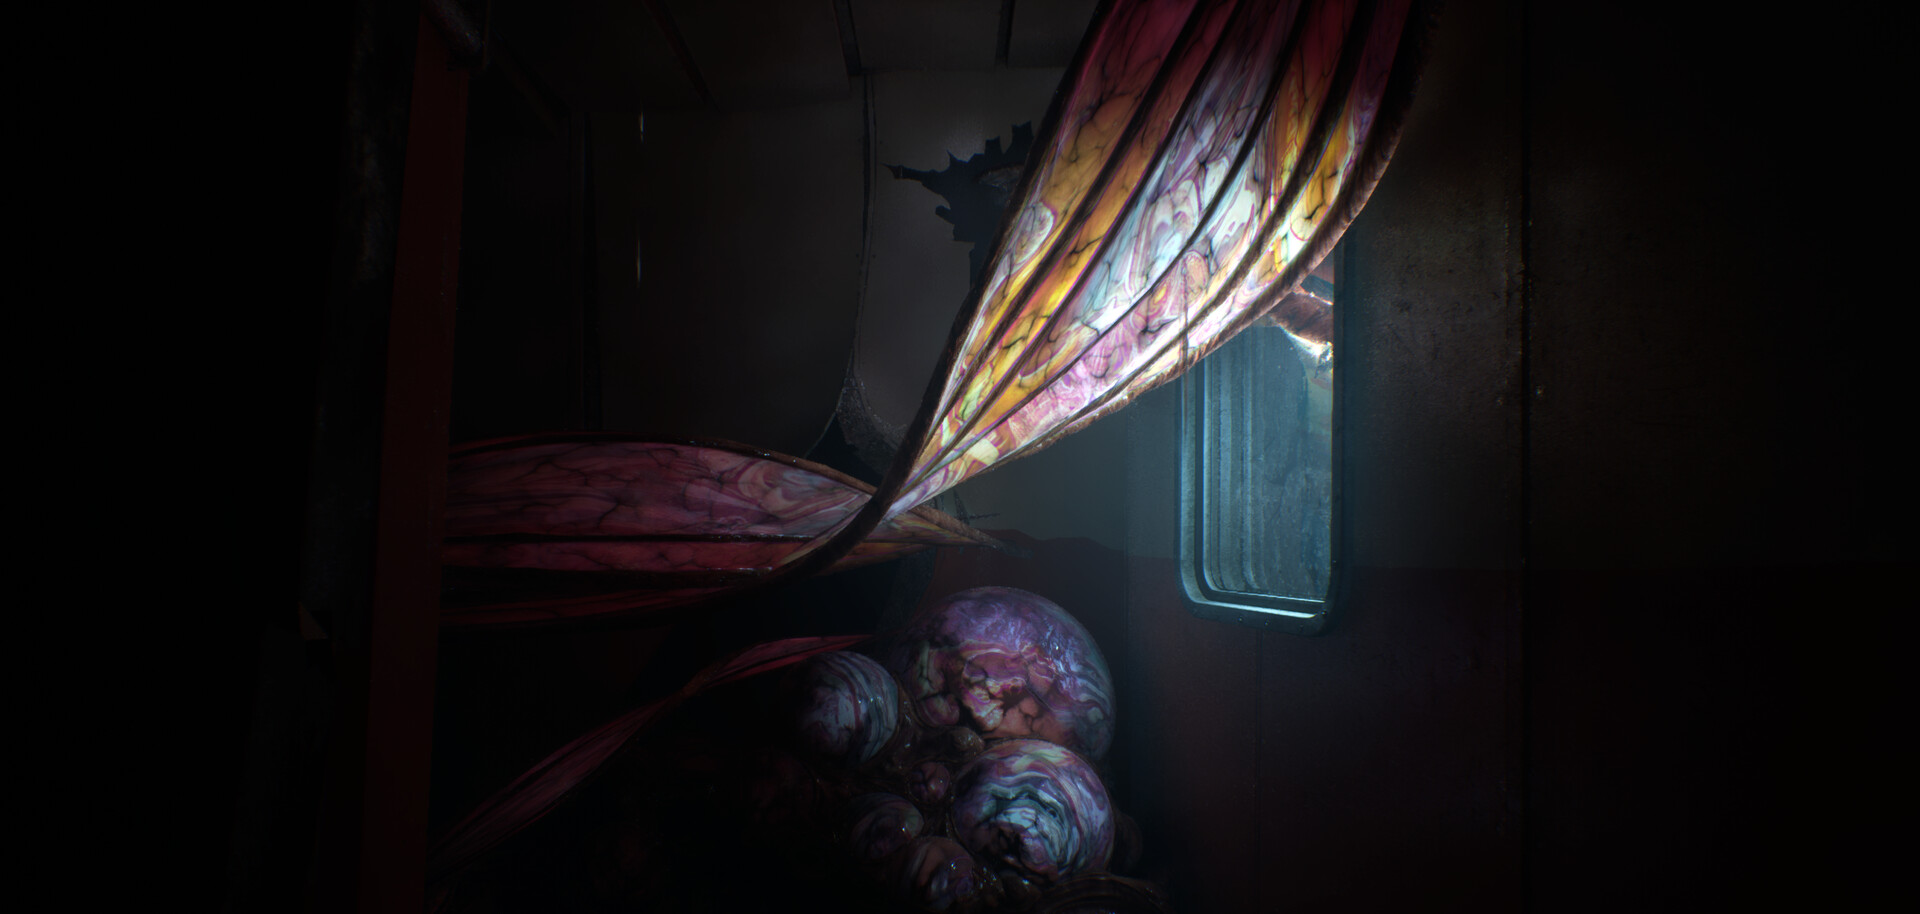 स्टिल वेक्स द डीप में एक मांसल राक्षस एक दरवाजे के पास बैठा है।